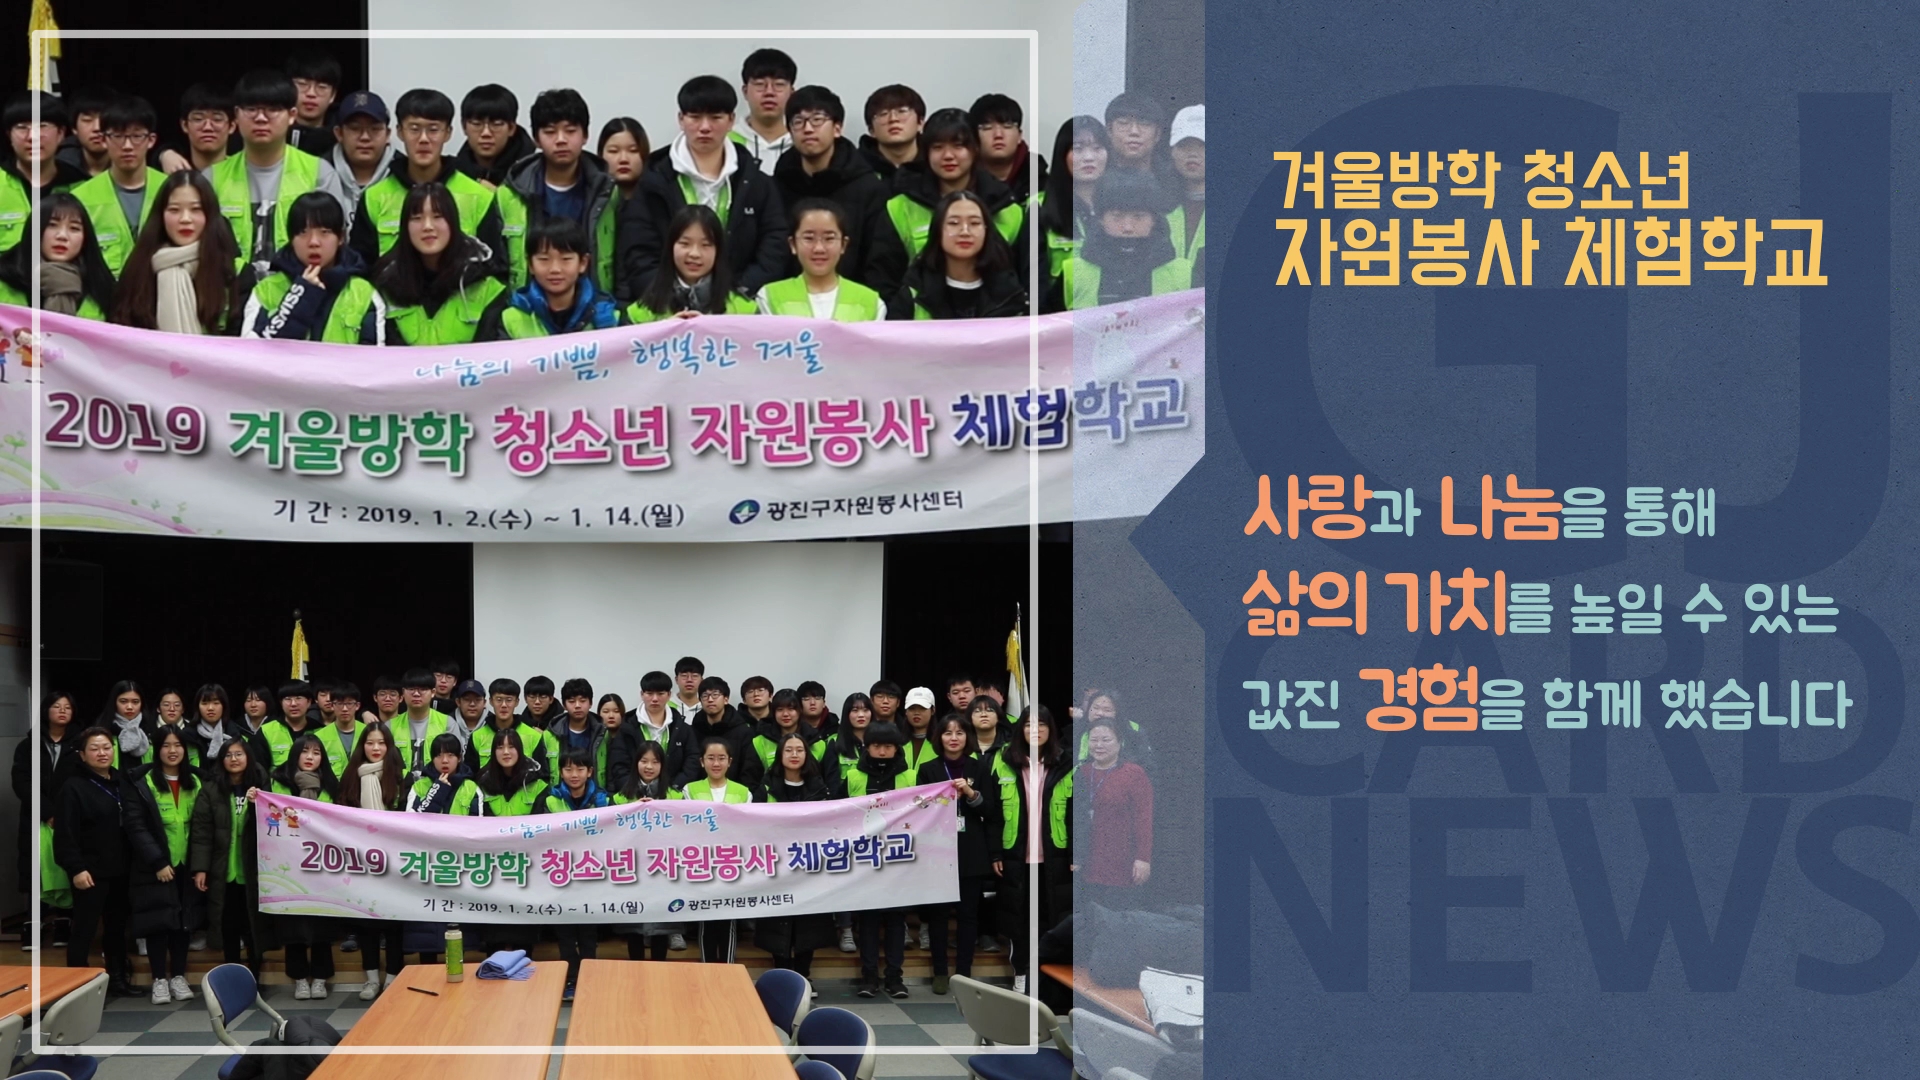 [광진카드뉴스 - 1월 둘째 주] 겨울방학 청소년 자원봉사 체험학교